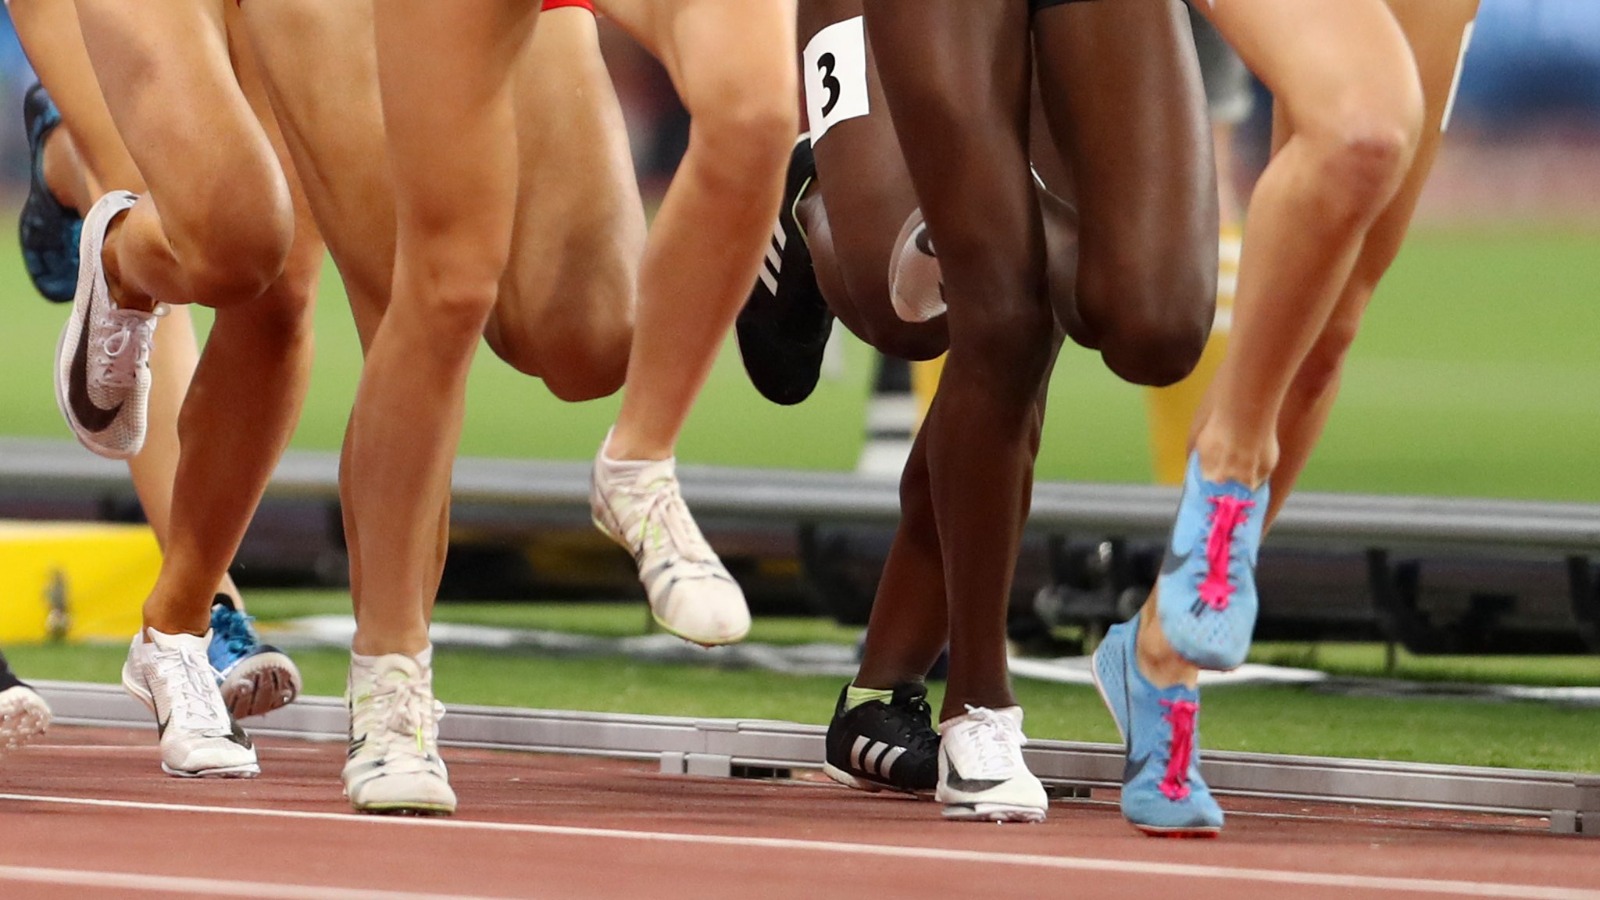 No podrán participar deportistas trans en competencias femeninas intercolegiales: EUA